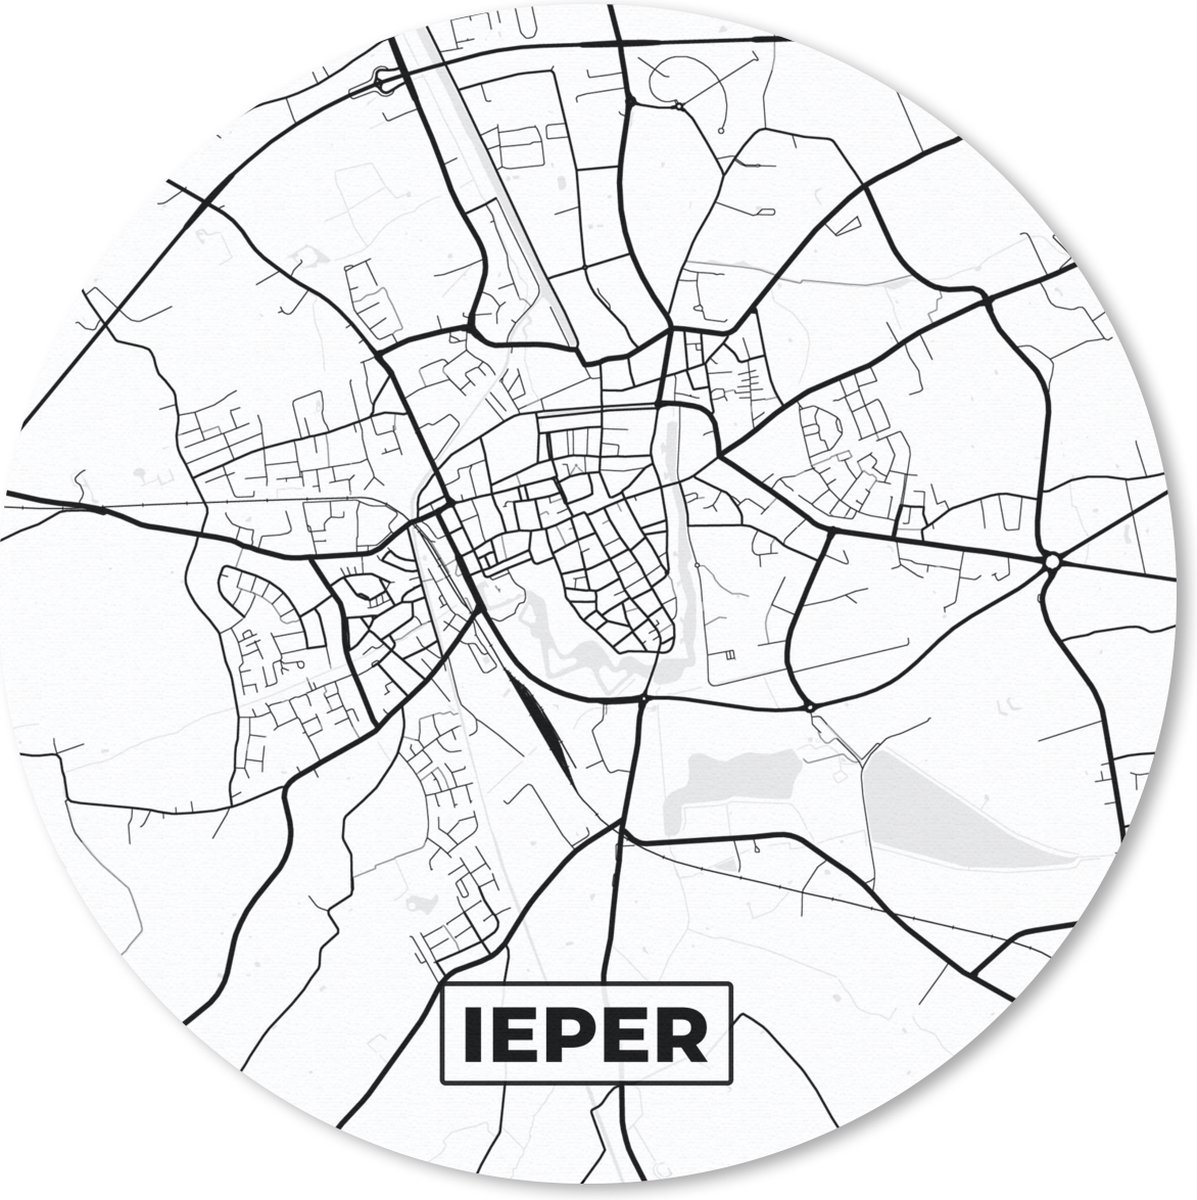 Muismat - Mousepad - Rond - België – Ieper – Stadskaart – Kaart – Zwart Wit – Plattegrond - 40x40 cm - Ronde muismat